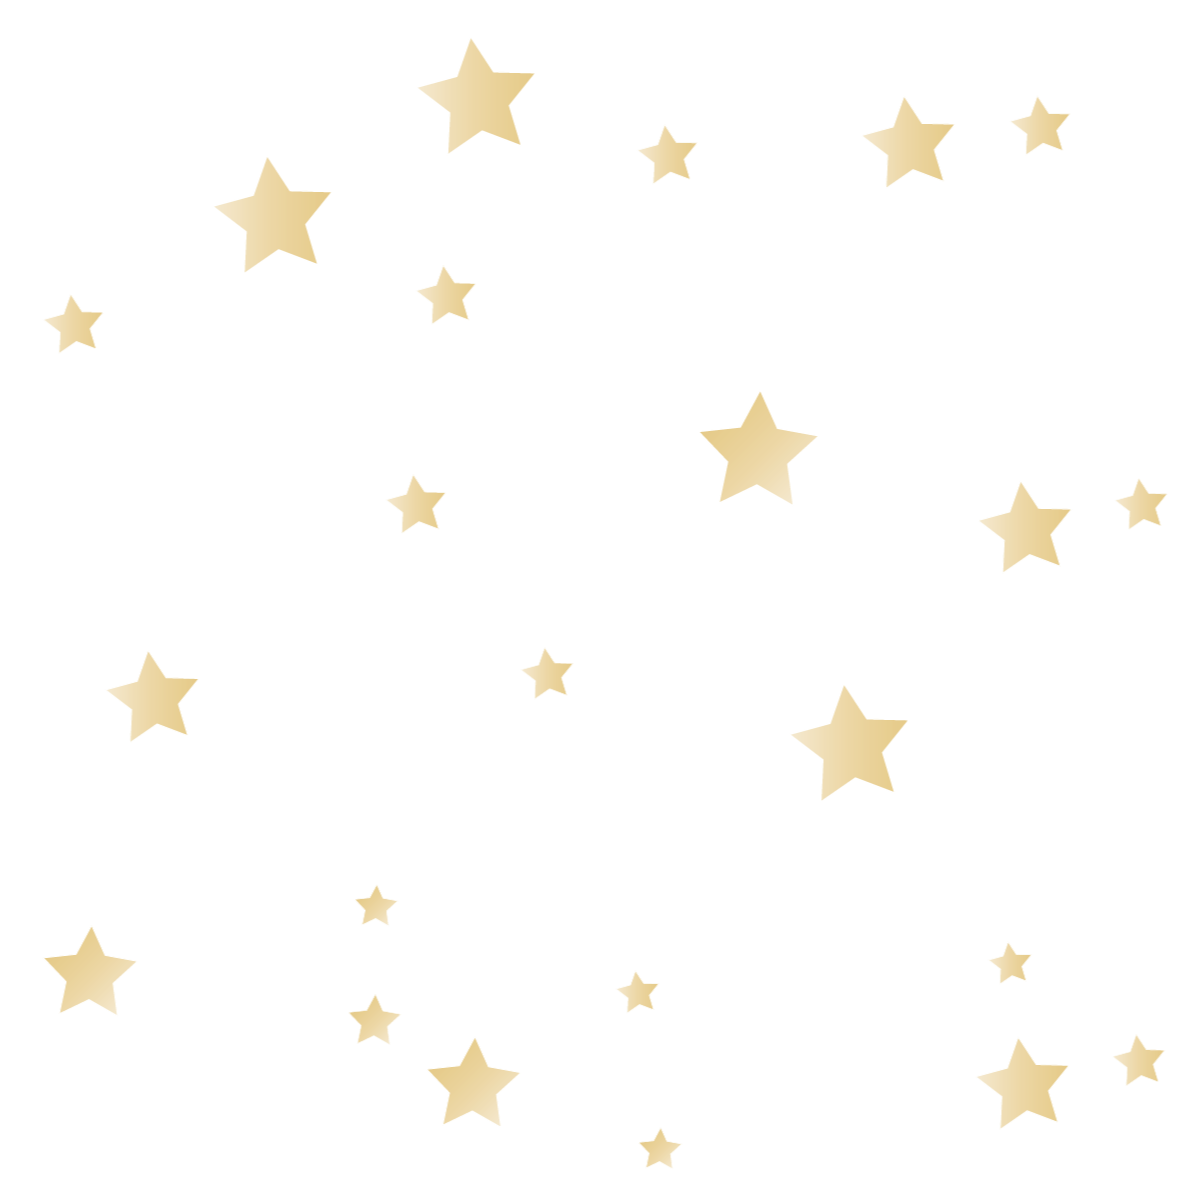 Ontstaan Viool Biscuit Gouden sterren muursticker | Kinderkamer muurdecoratie – LM Baby Art